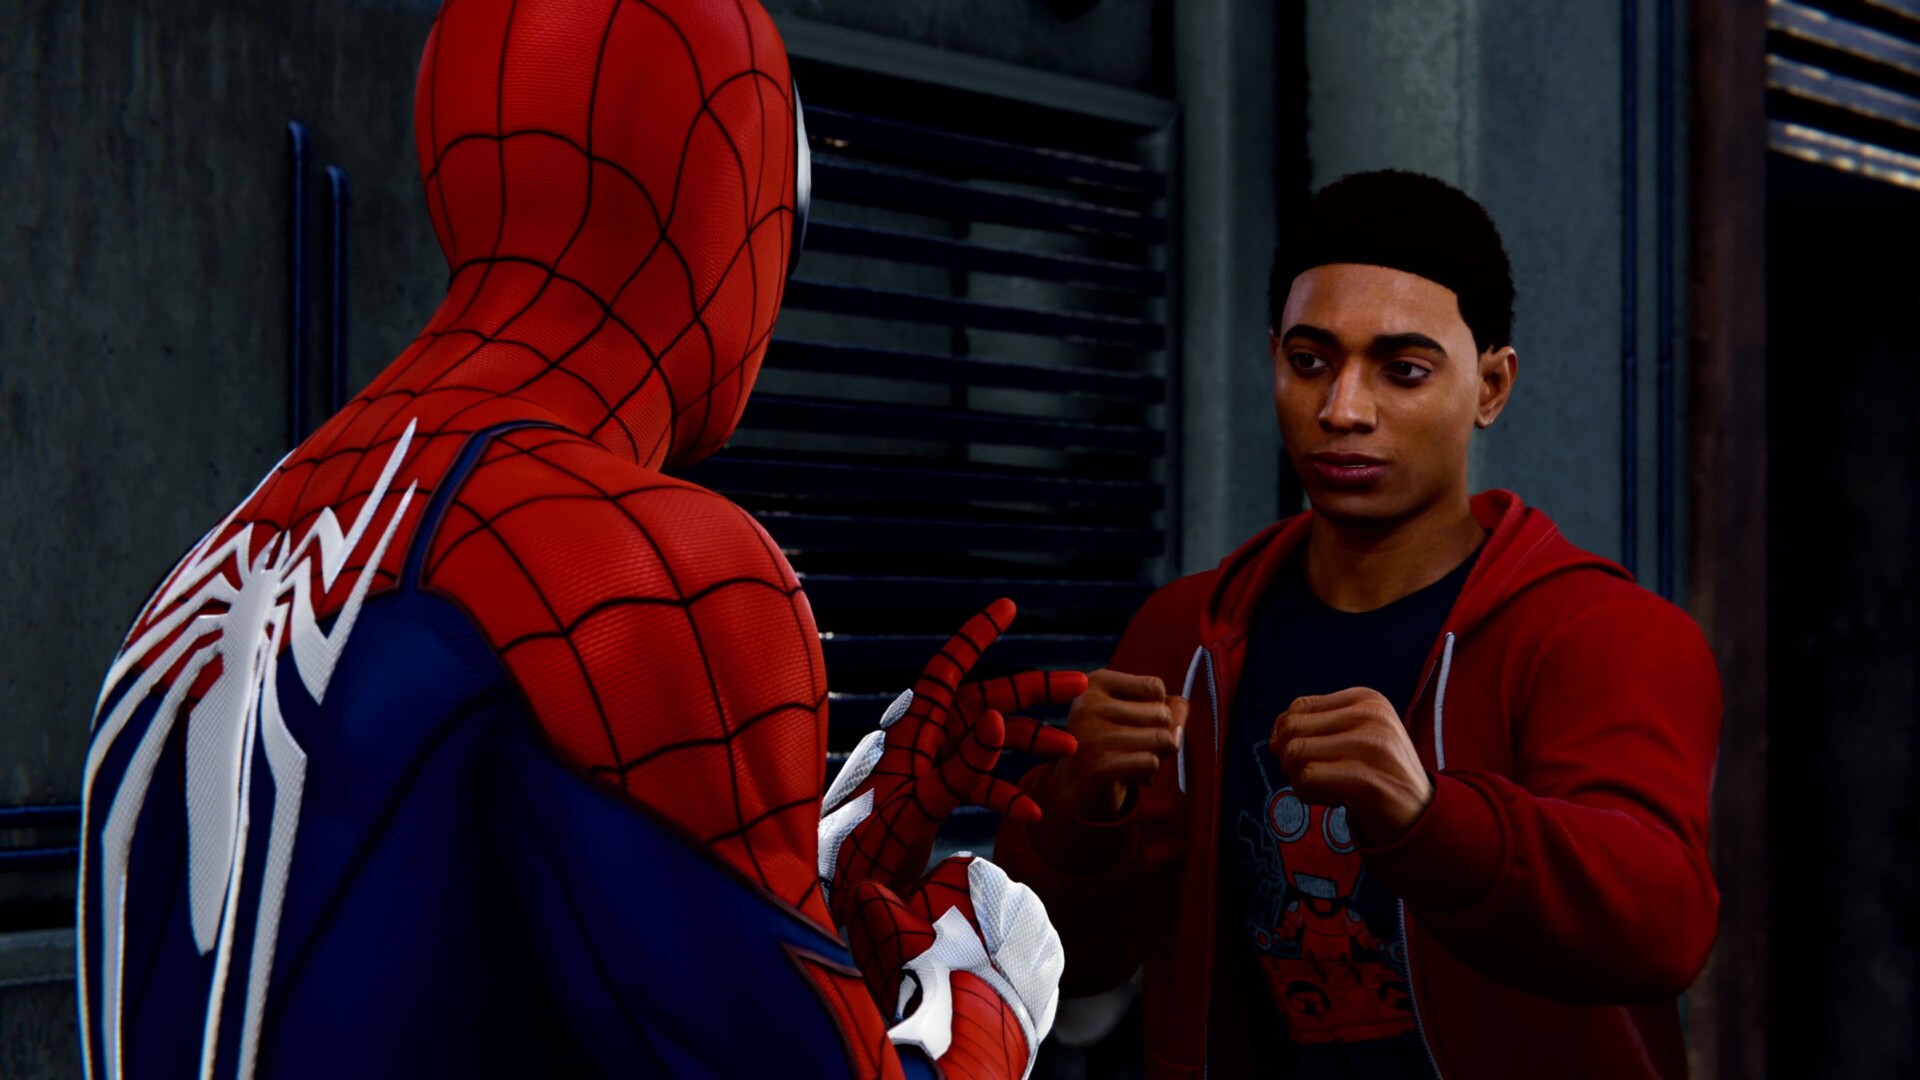 Spider-Man: Miles Morales é bom, mas performance no PC nem tanto